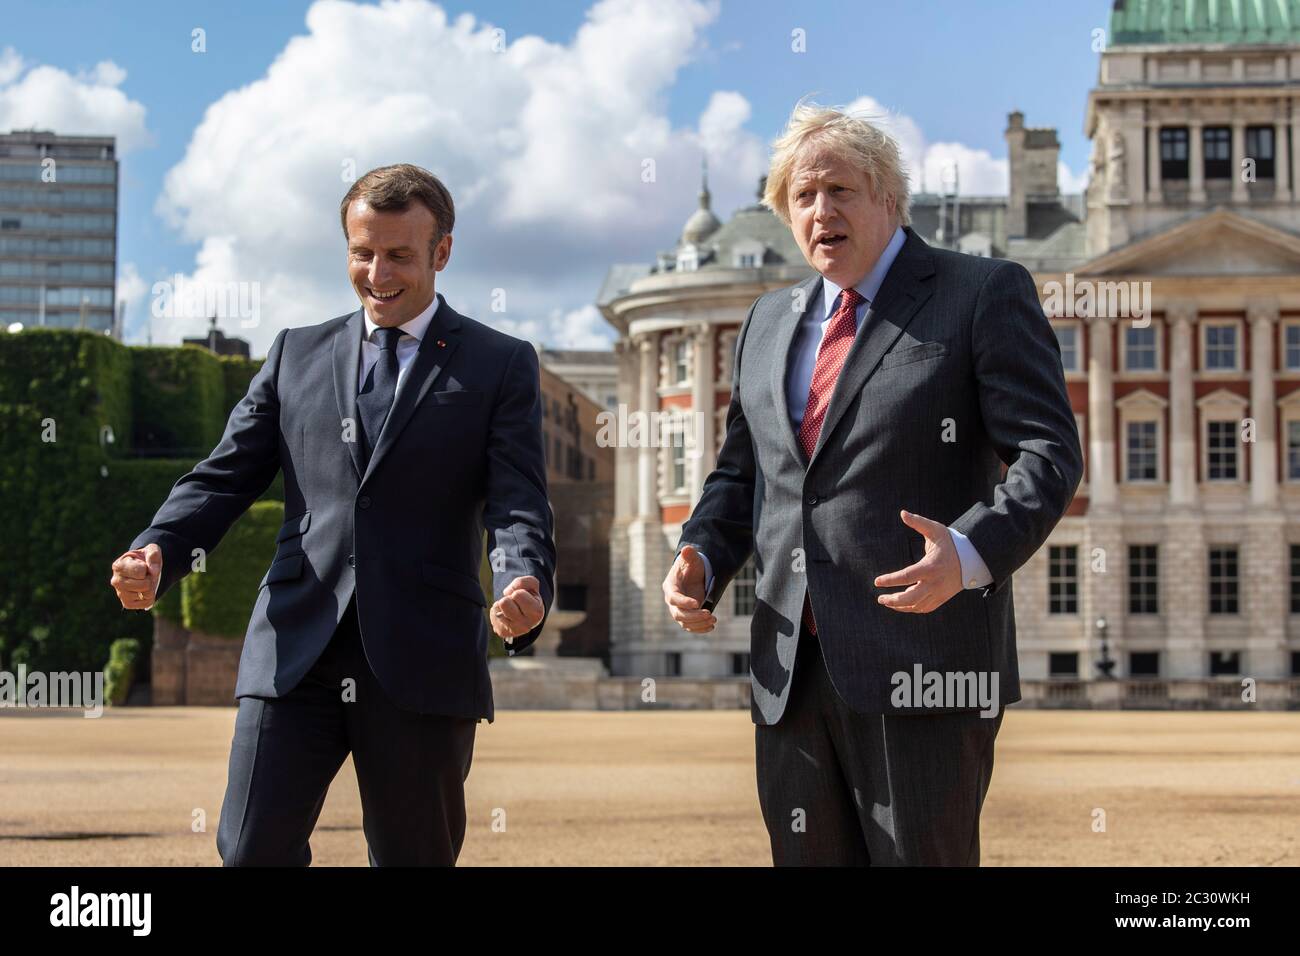 Il primo ministro Boris Johnson (a destra) con il presidente francese Emmanuel Macron osserva un sorvolo delle frecce rosse e del loro equivalente francese, la Patrouille de France, dalla Horse Guards Parade di Londra durante la sua visita nel Regno Unito. Foto Stock